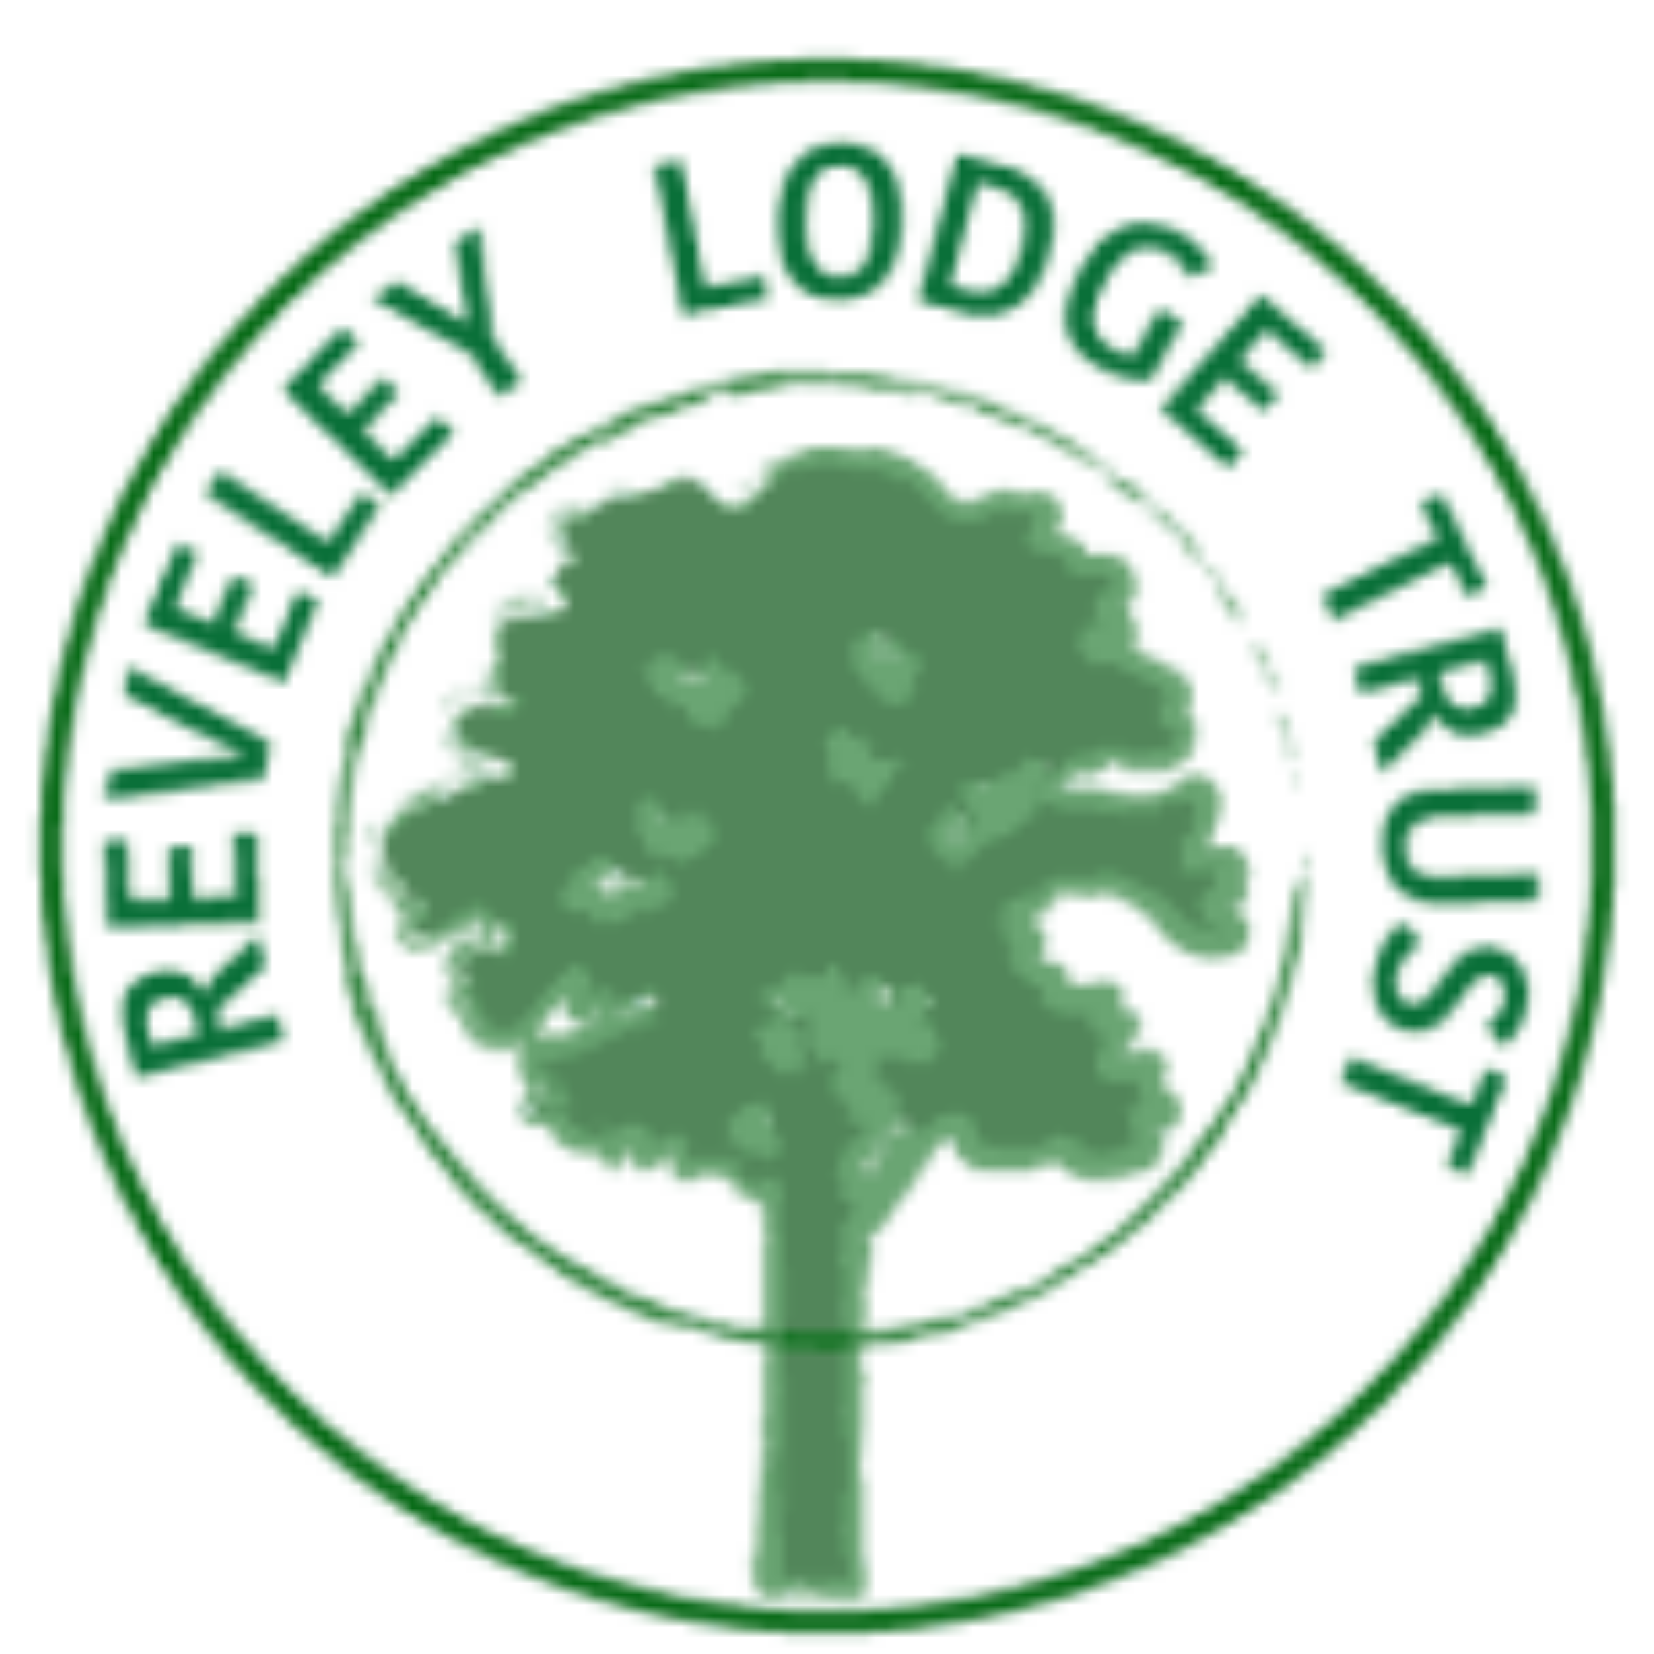 Reveley Lodge Trust 